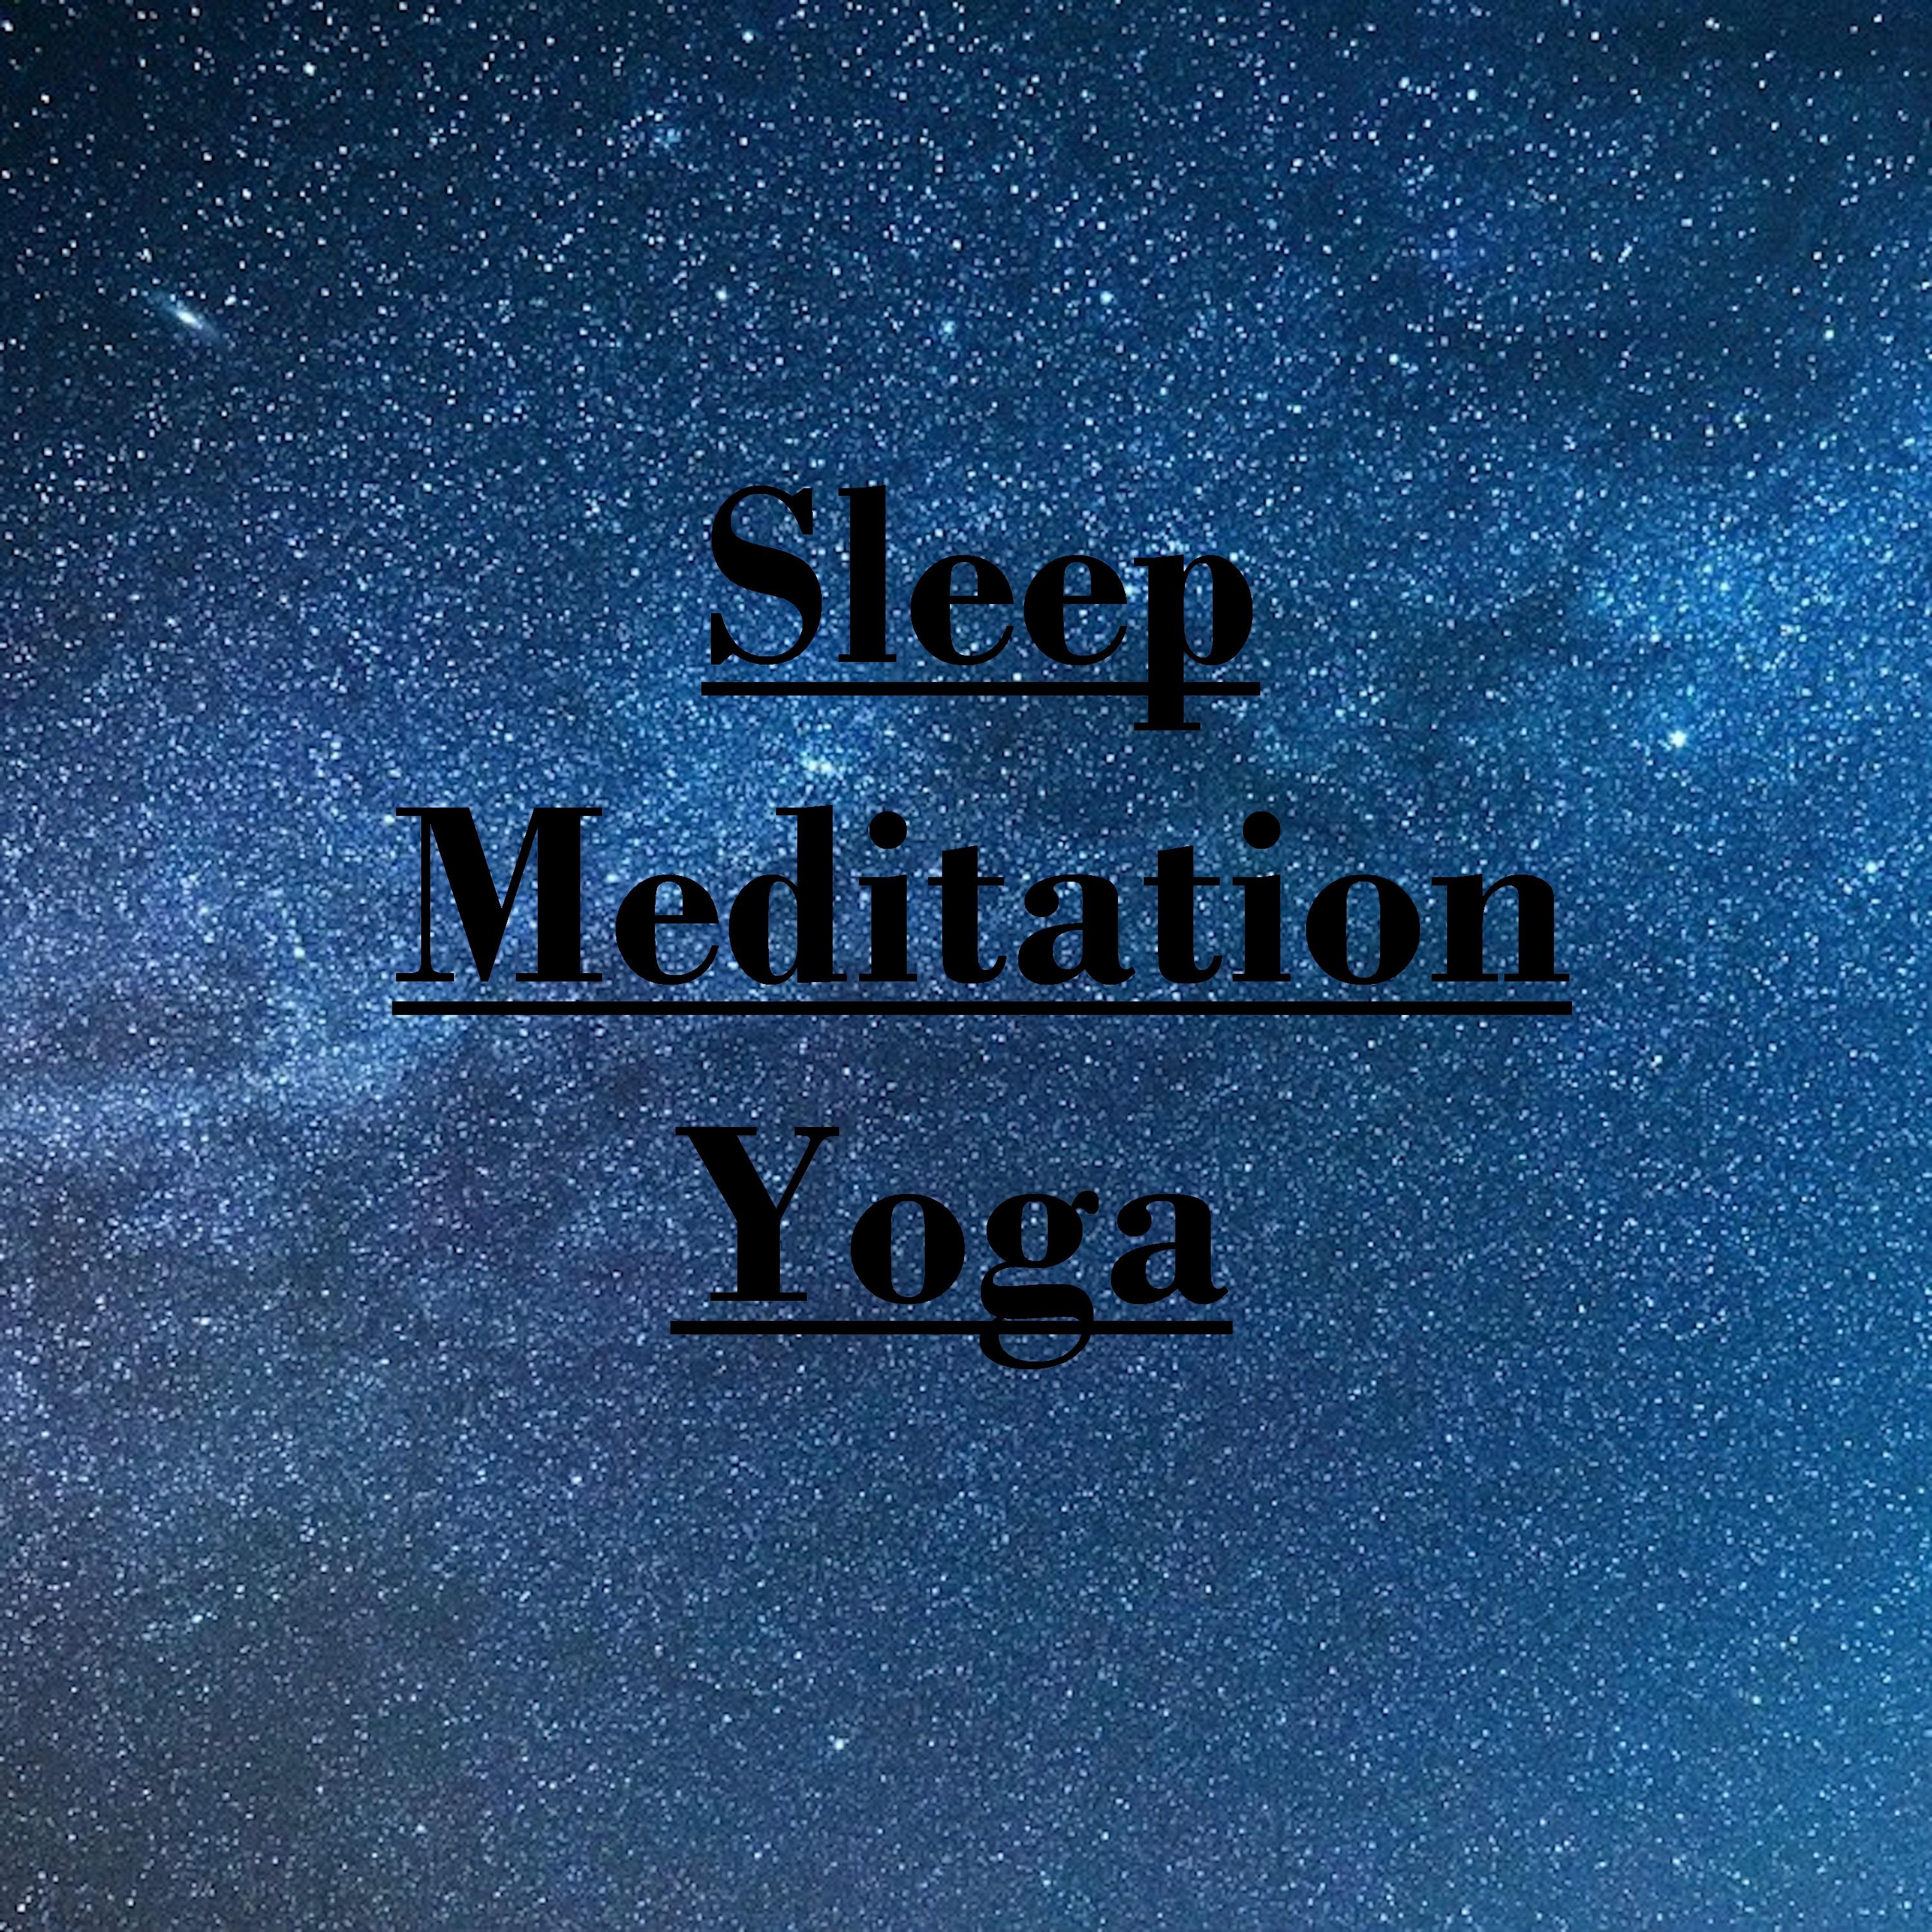 18 Sleep, Meditation, Yoga and Spa Rain Sounds